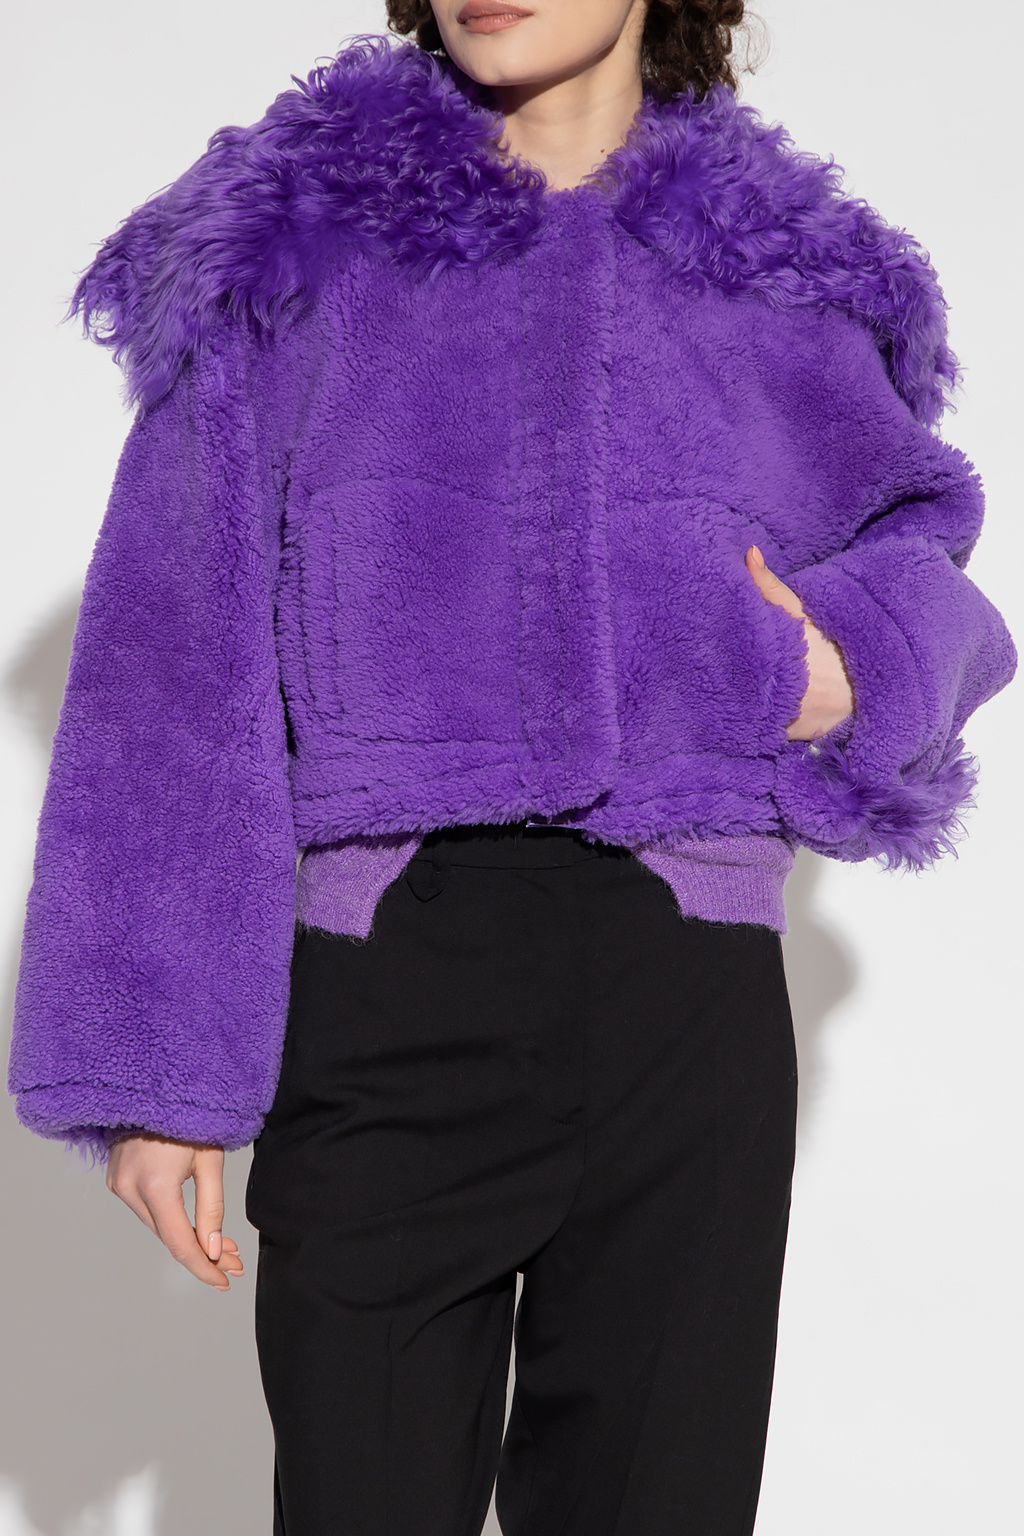 Purple ‘Piloni’ shearling jacket Jacquemus - Vitkac Germany